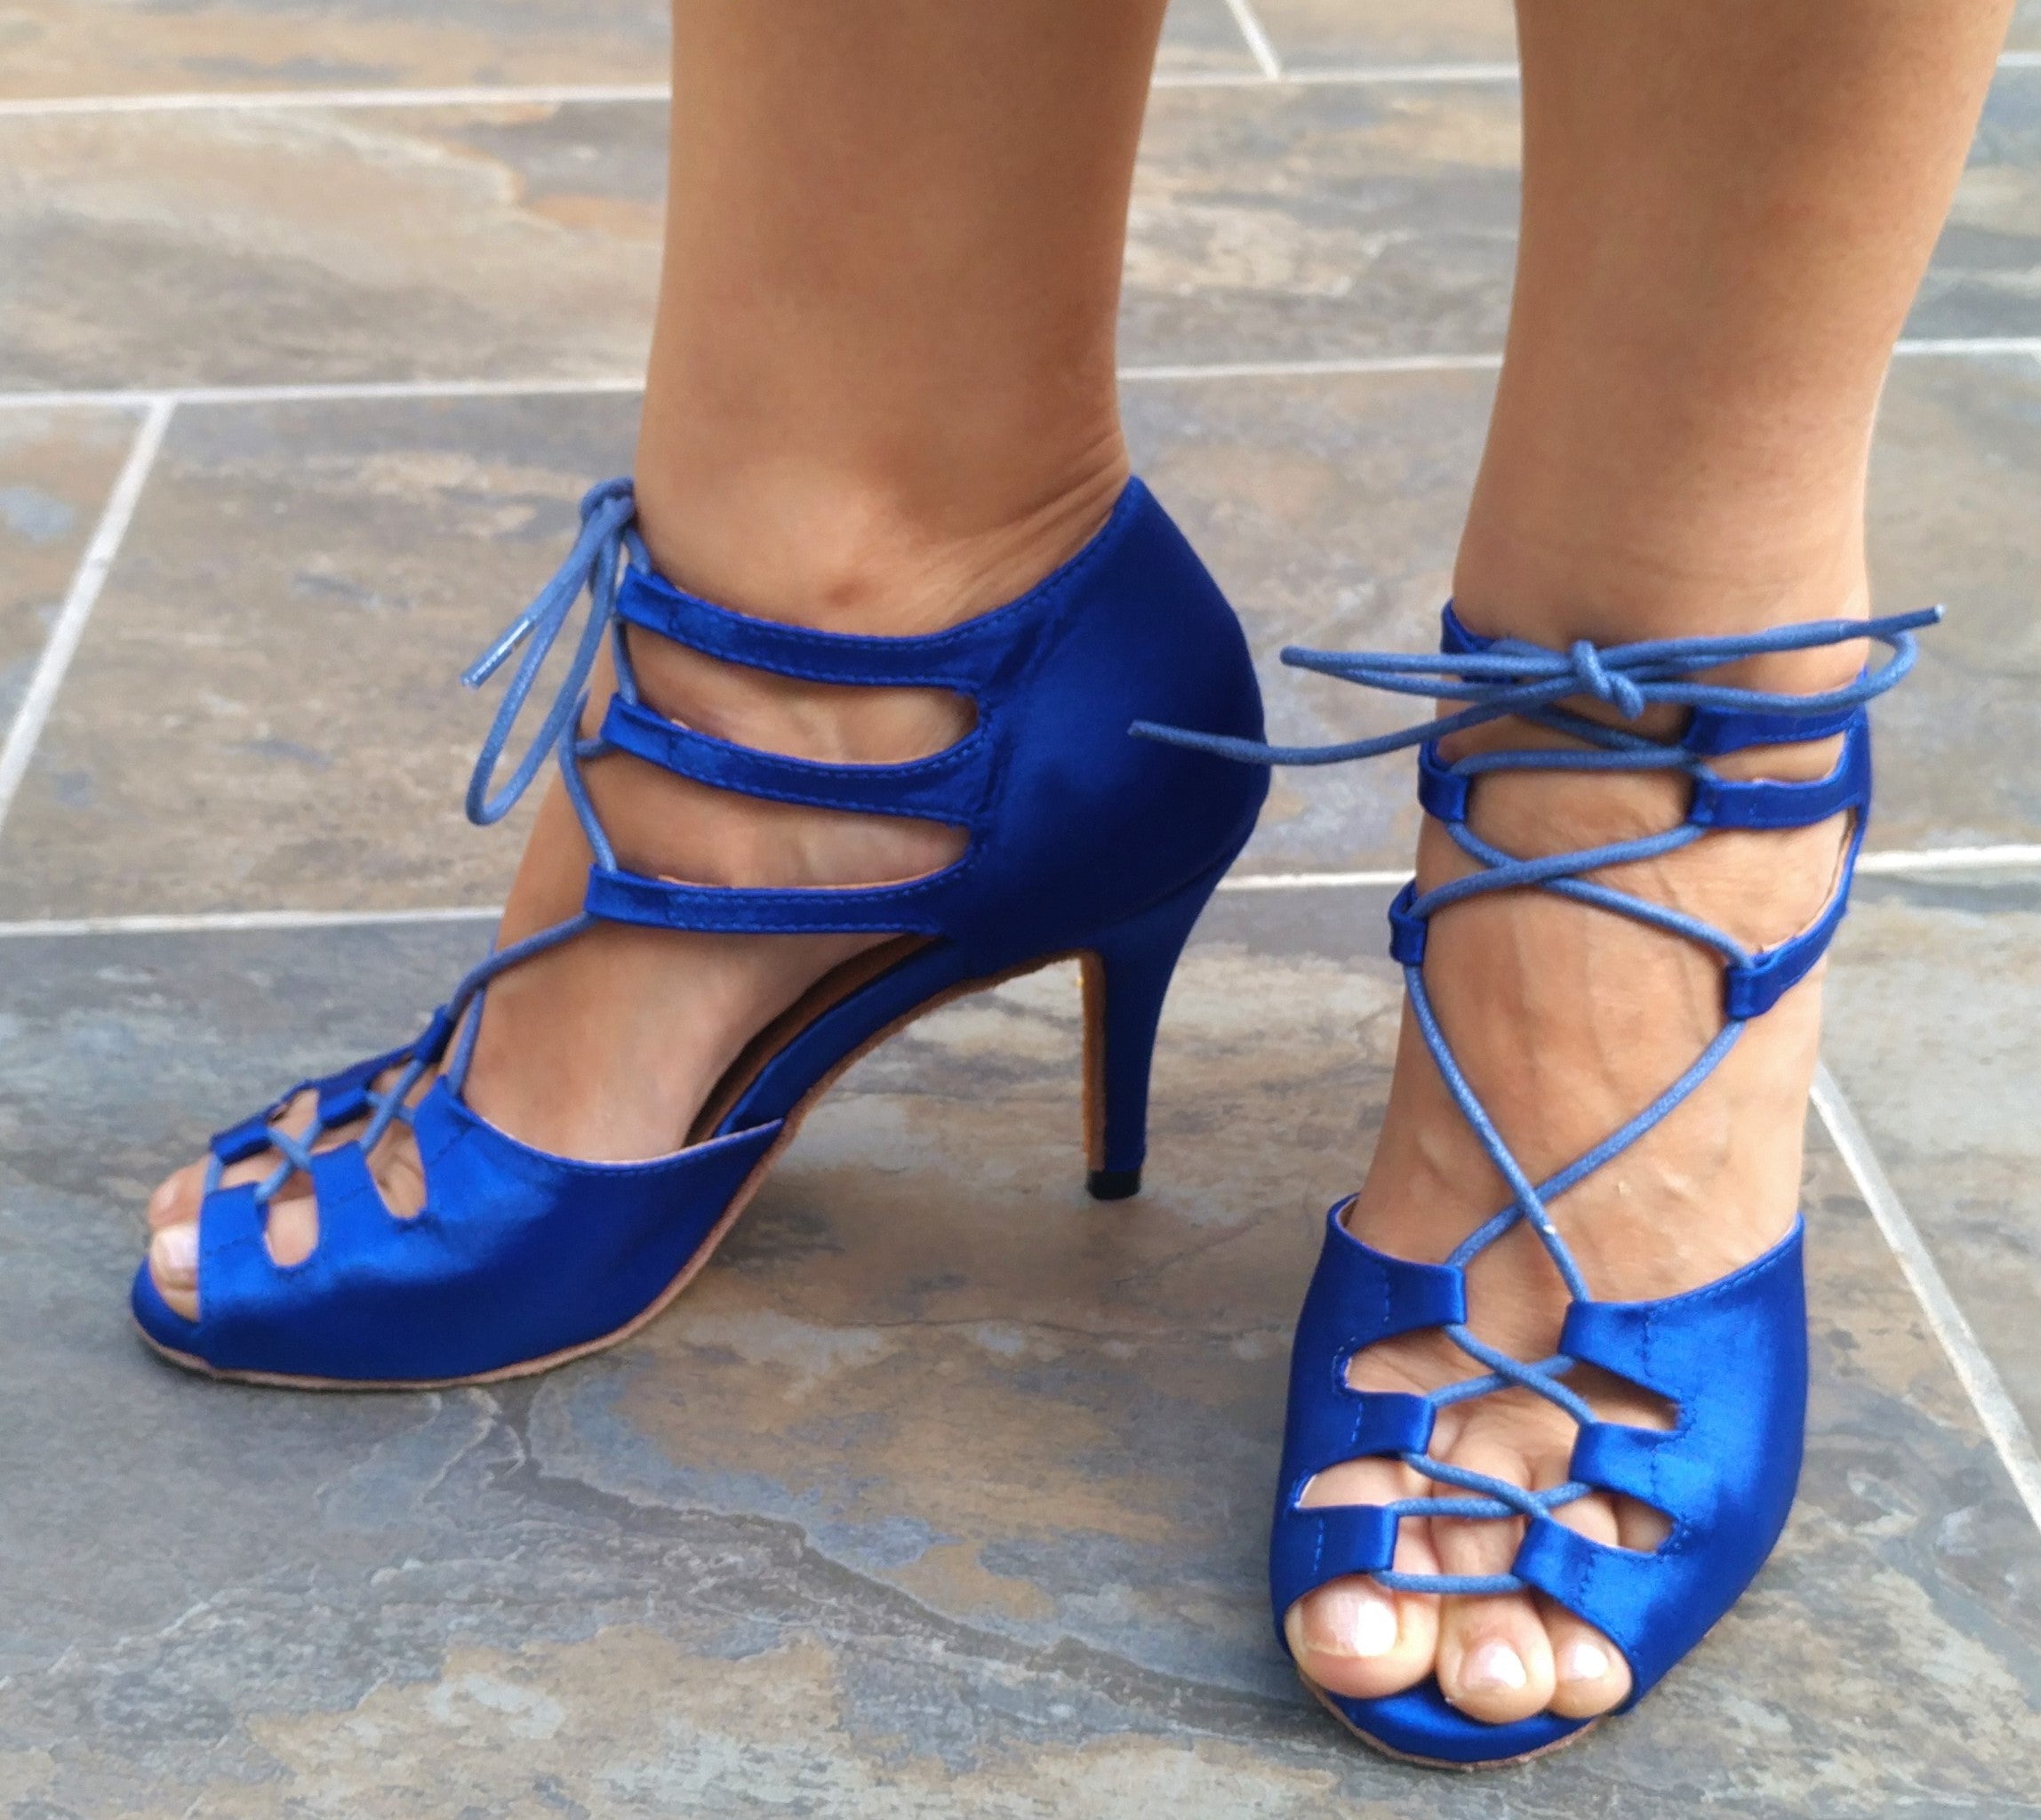 Tallas 38 y 40 - Zapato Azul